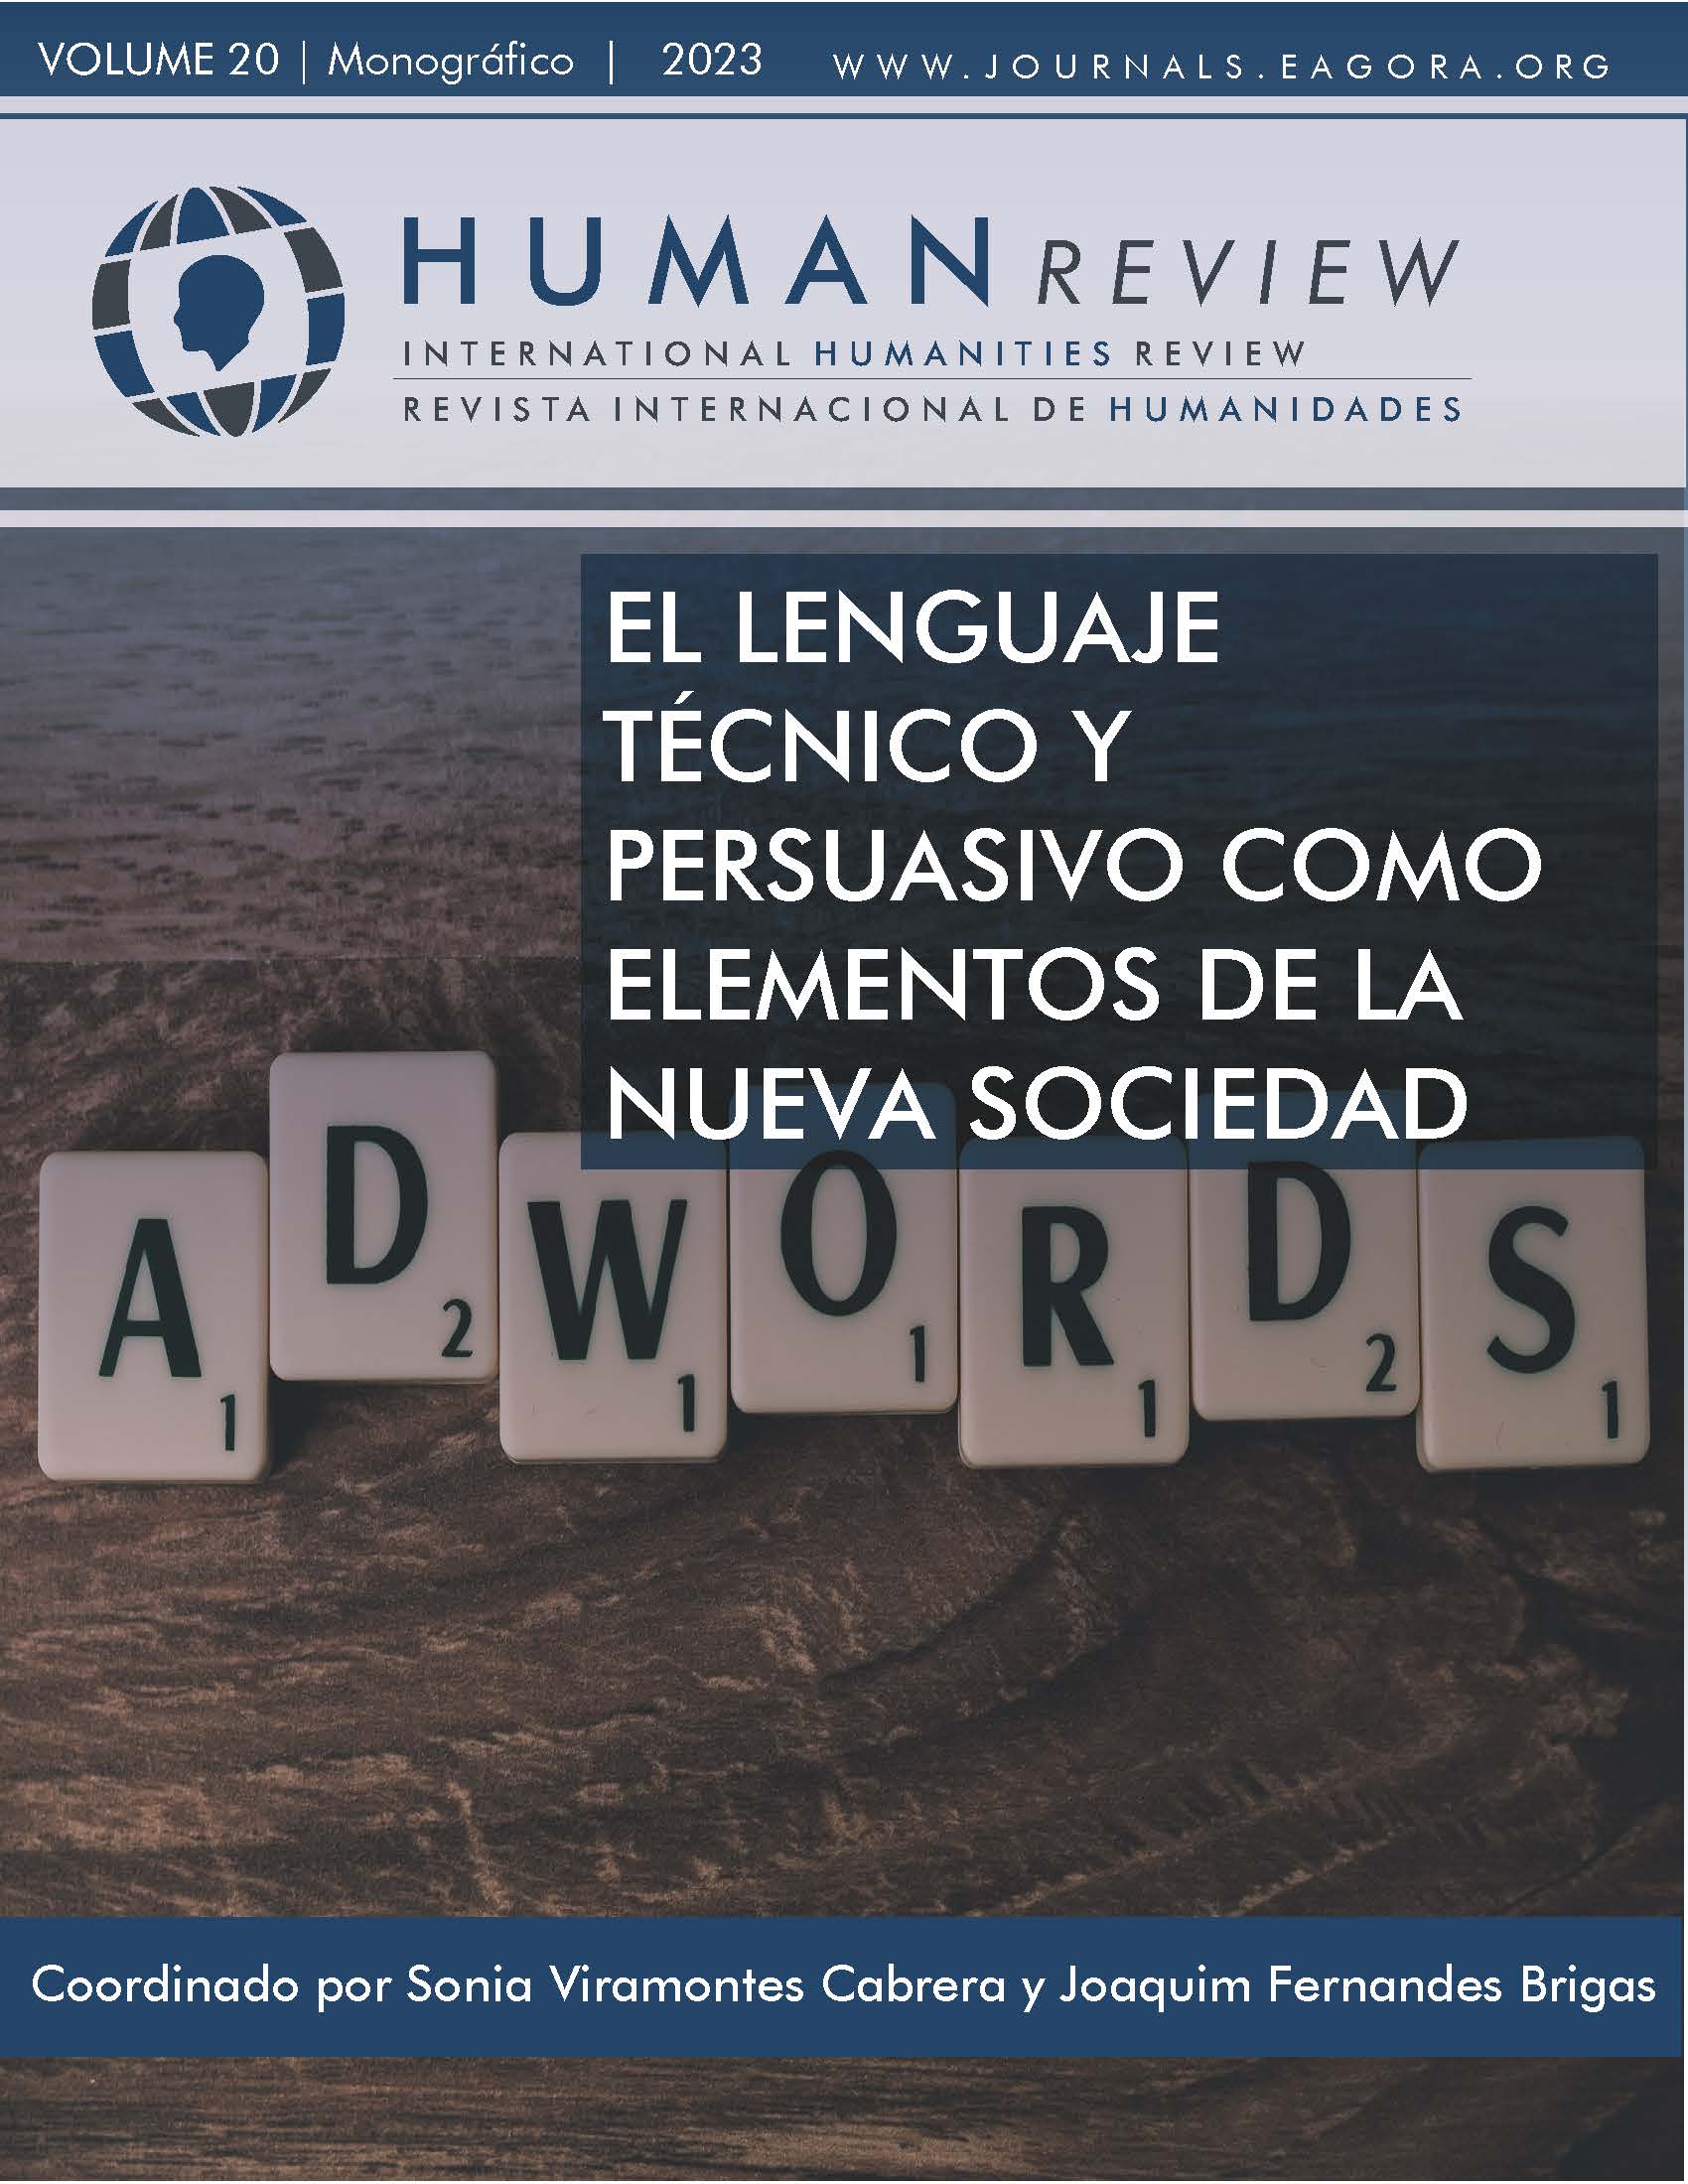 					Visualizar v. 20 n. 5 (2023): Monografía: "Linguagem técnica e persuasiva como elementos da nova sociedade"
				